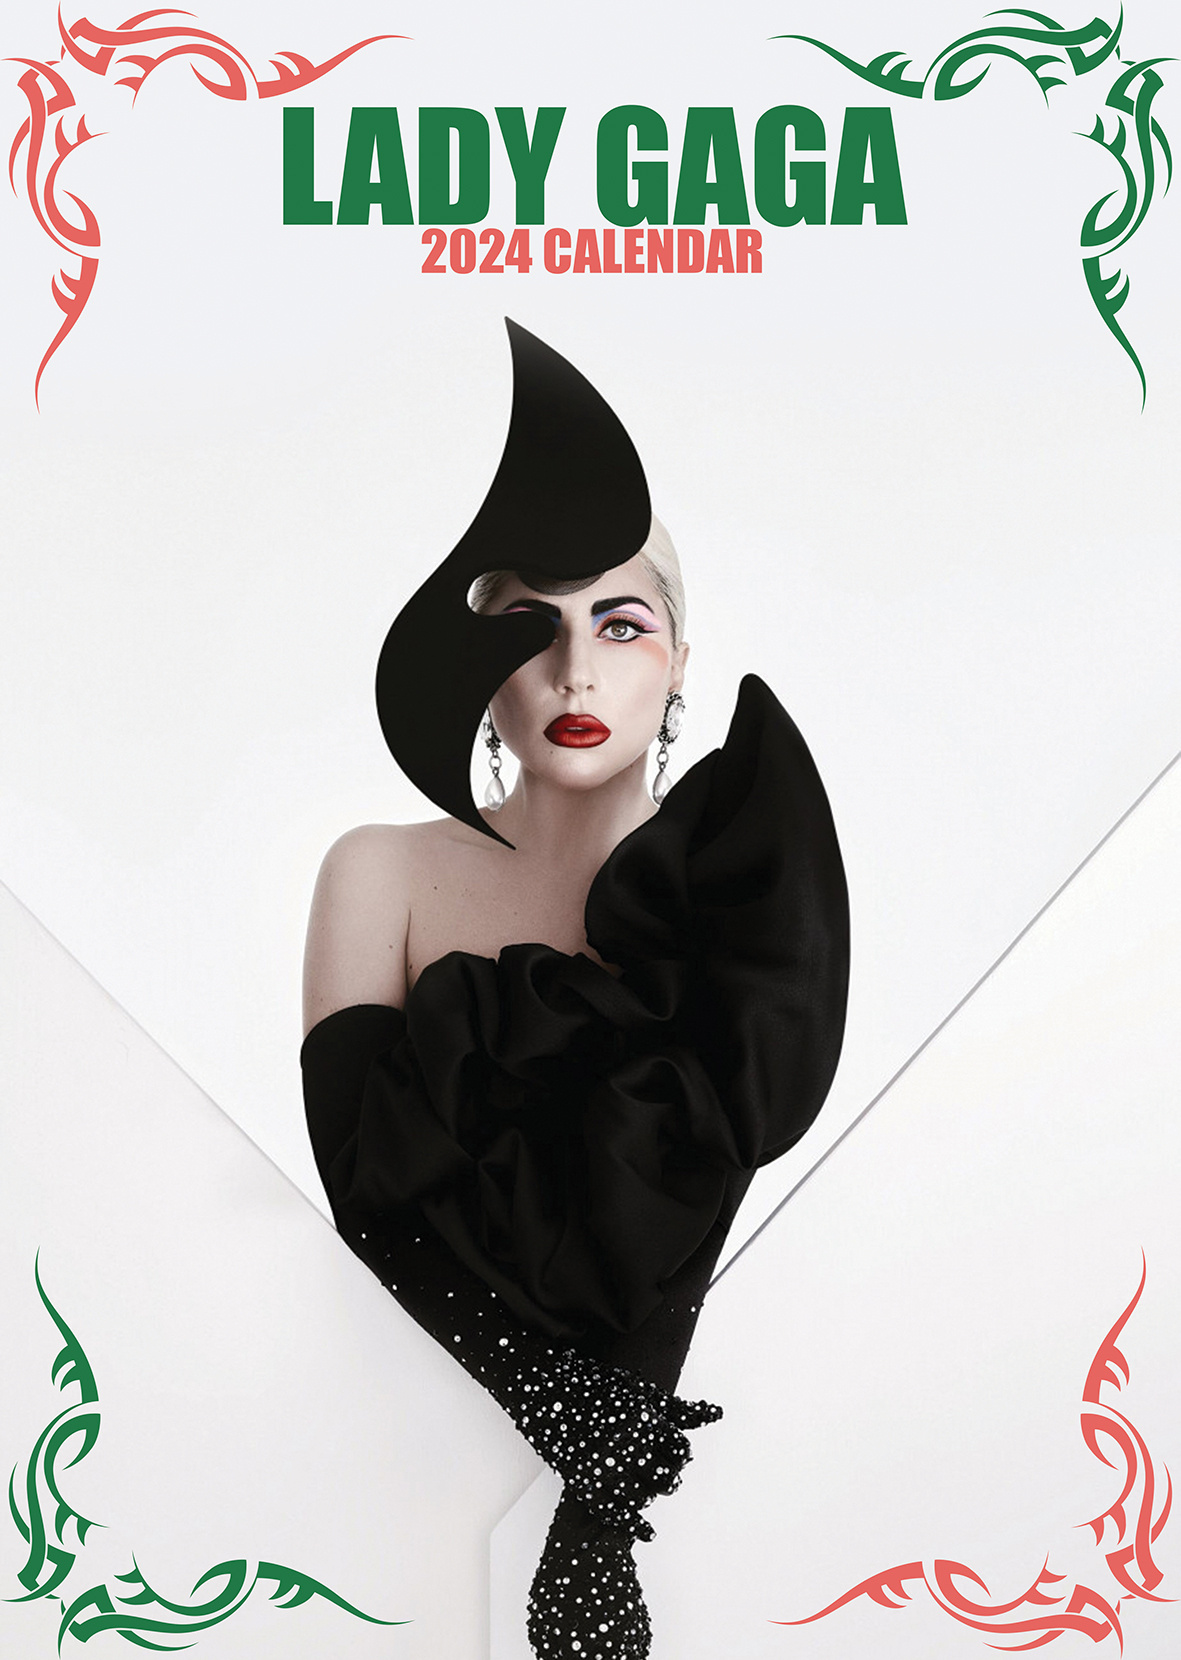 Buying Lady Gaga Calendar 2024 simply order online